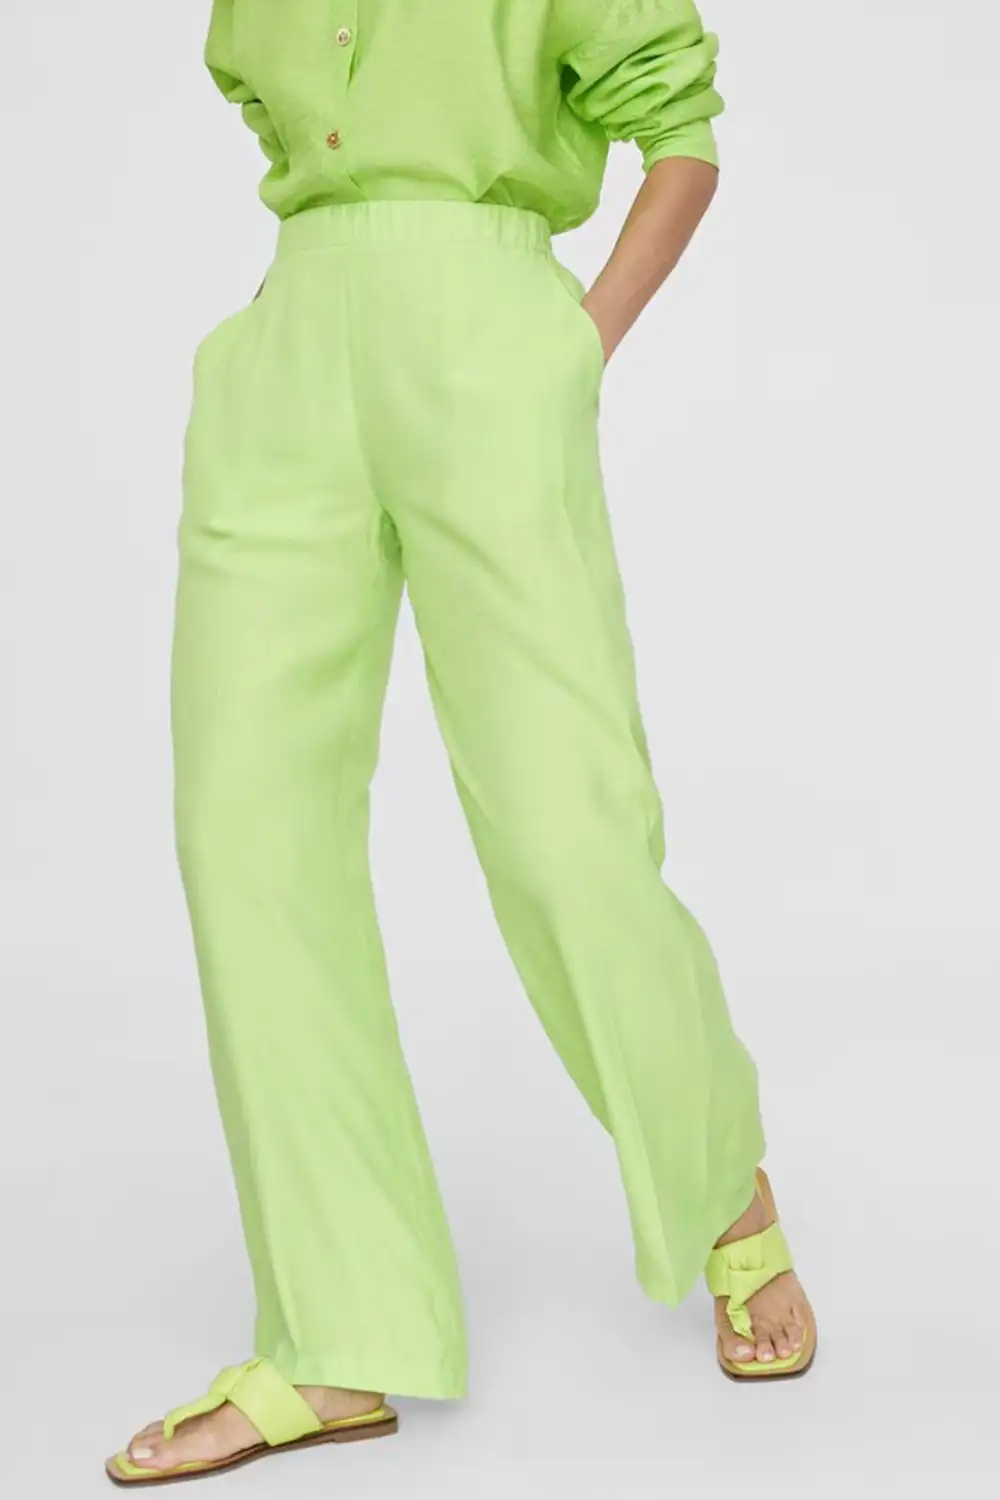 pantalones verdes 8